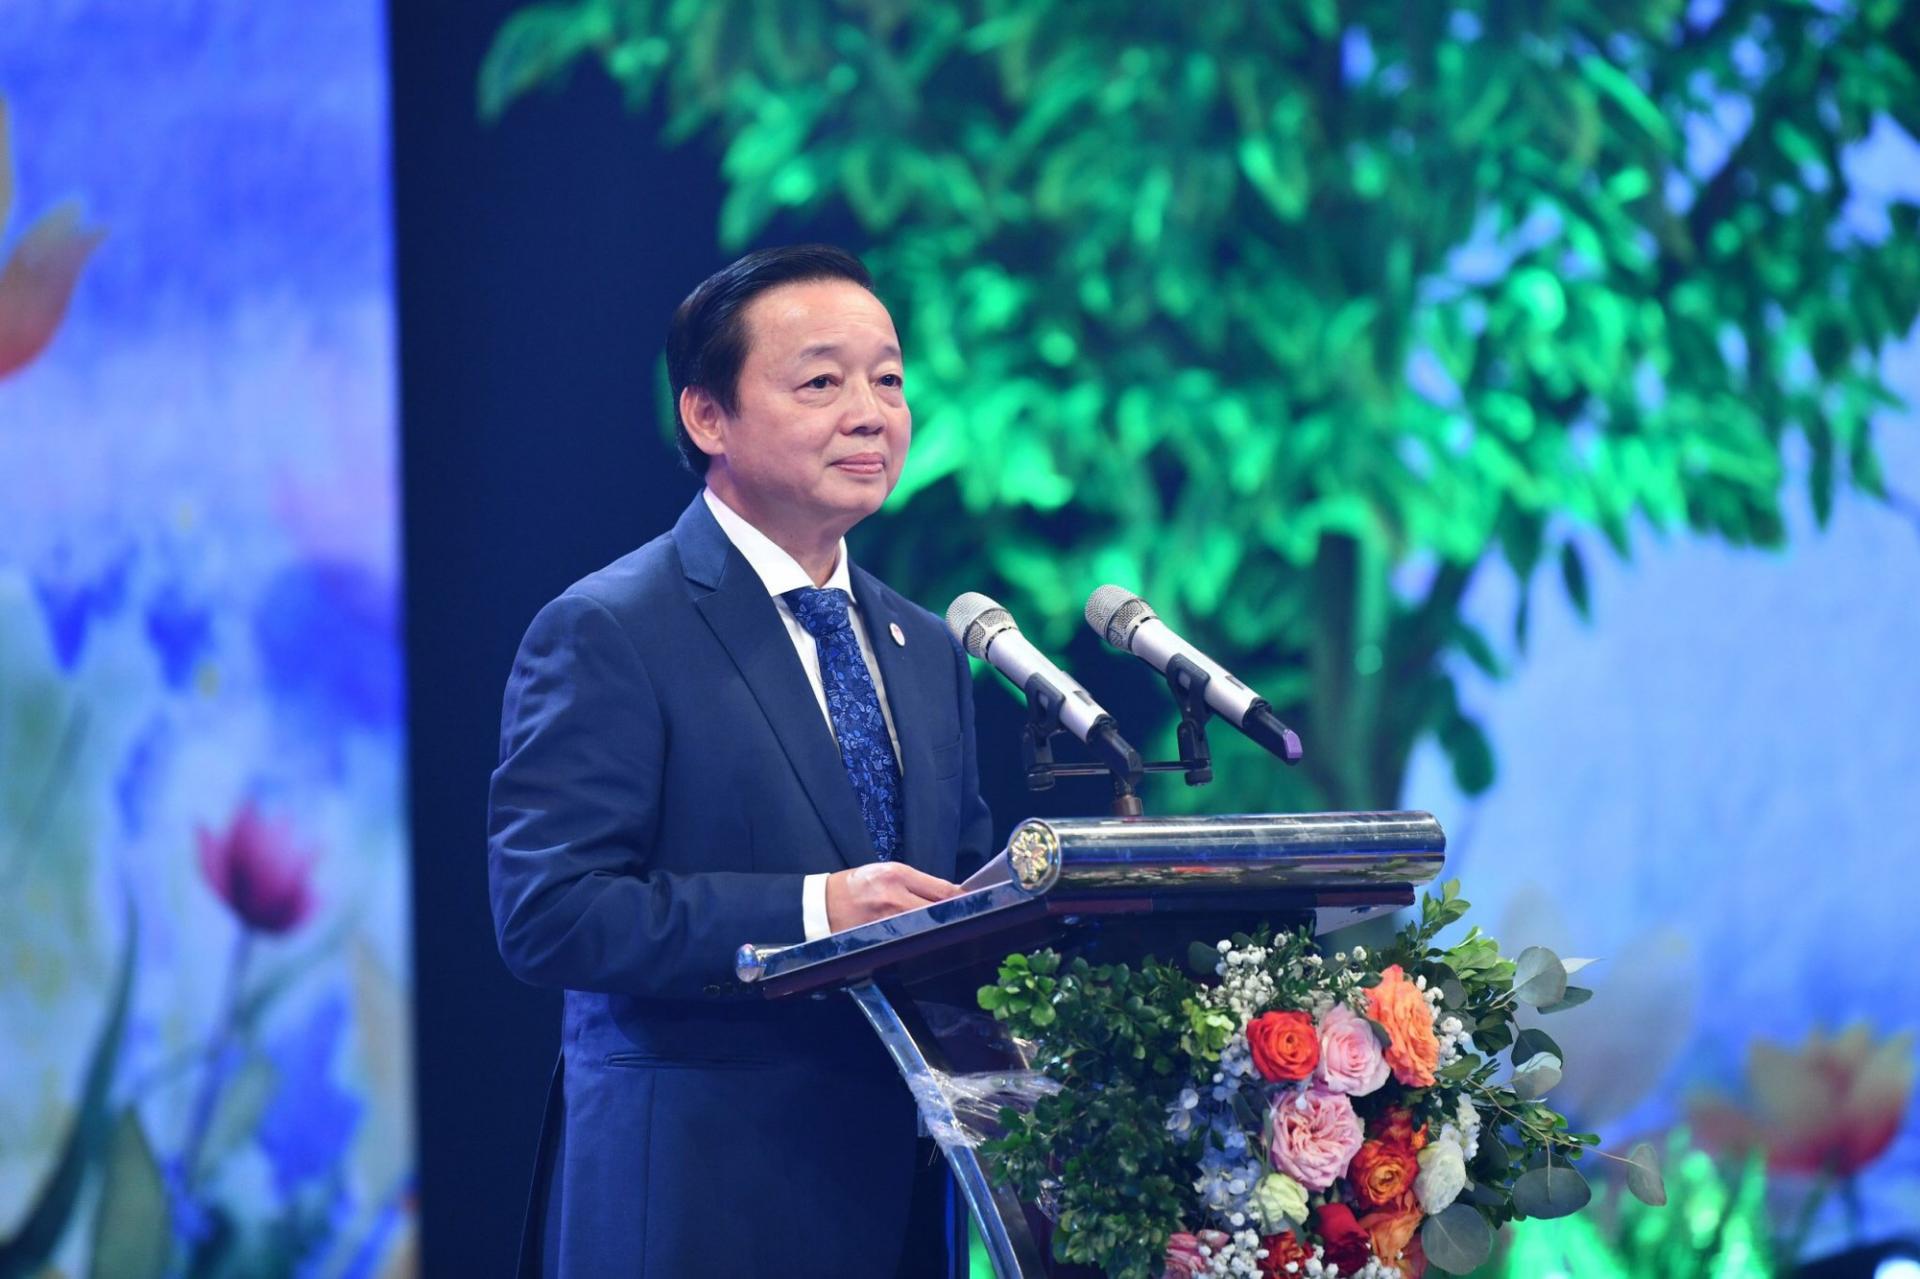 Phó Thủ tướng Trần Hồng Hà: Nghề giáo, nhà giáo cần nhận được sự tôn trọng đúng mức hơn của cả xã hội. Không chỉ là những lời chúc hoa mỹ, những bó hoa trong ngày 20/11, mà phải là nhận thức chung của cả xã hội